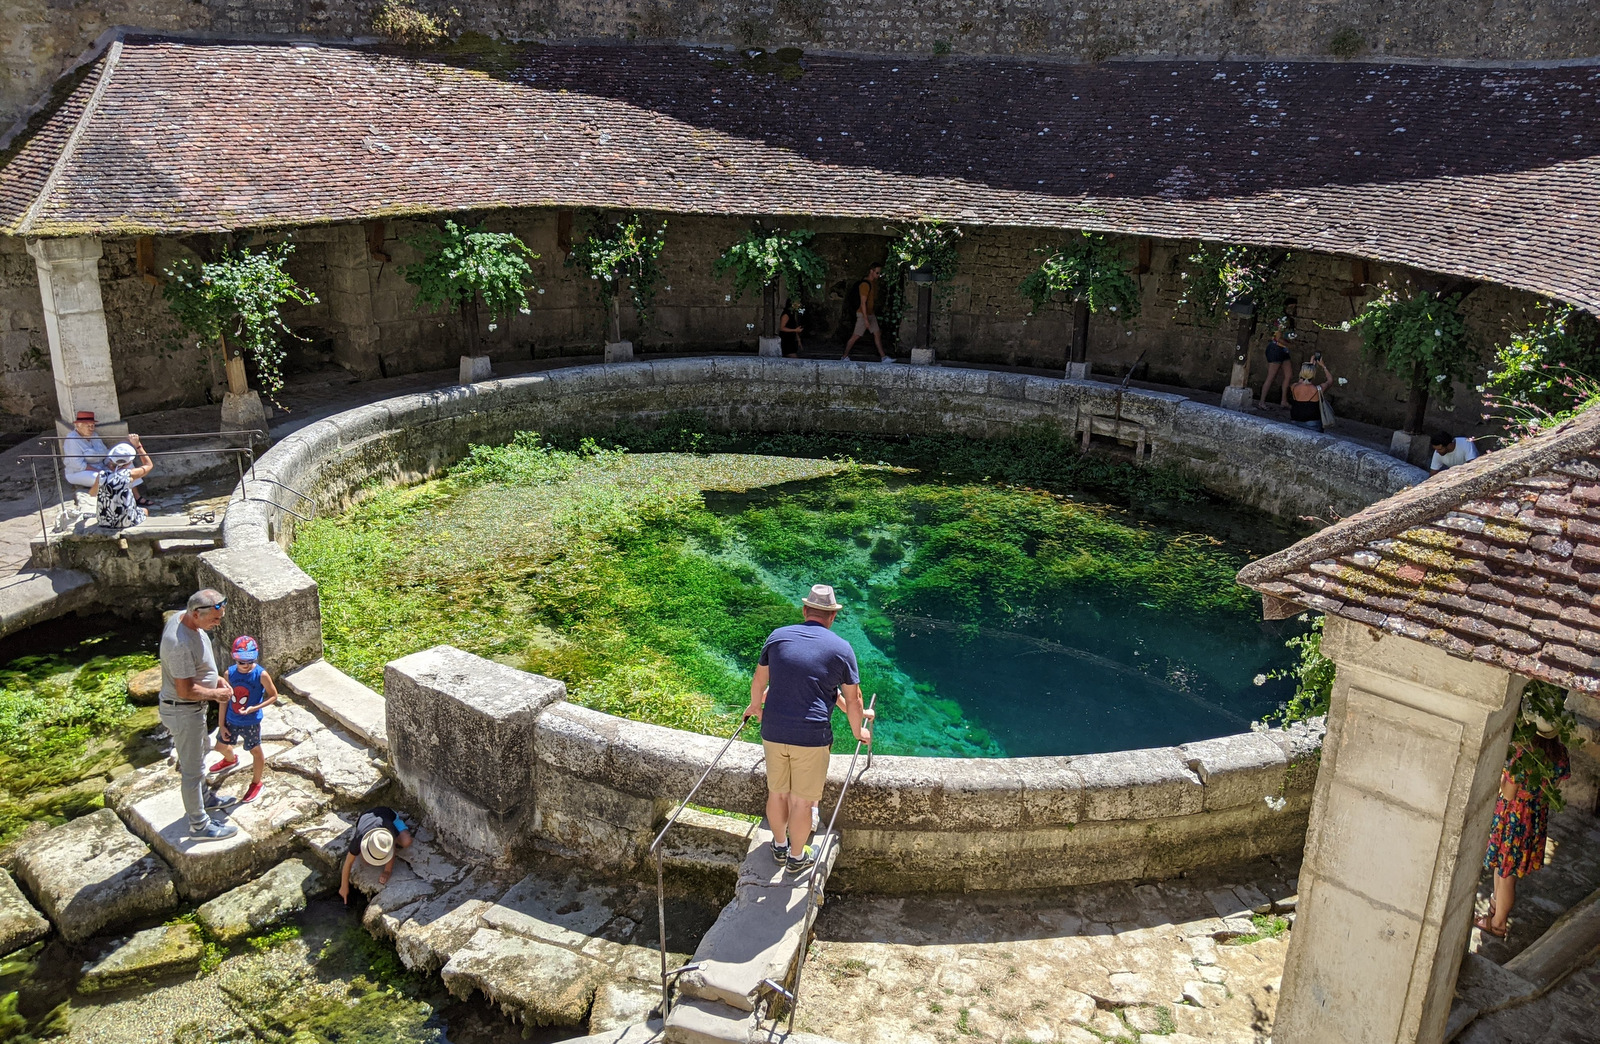 Suối ngầm Fosse Dionne là một hồ bơi bằng đá hình tròn được xây dựng vào thế kỷ XVIII